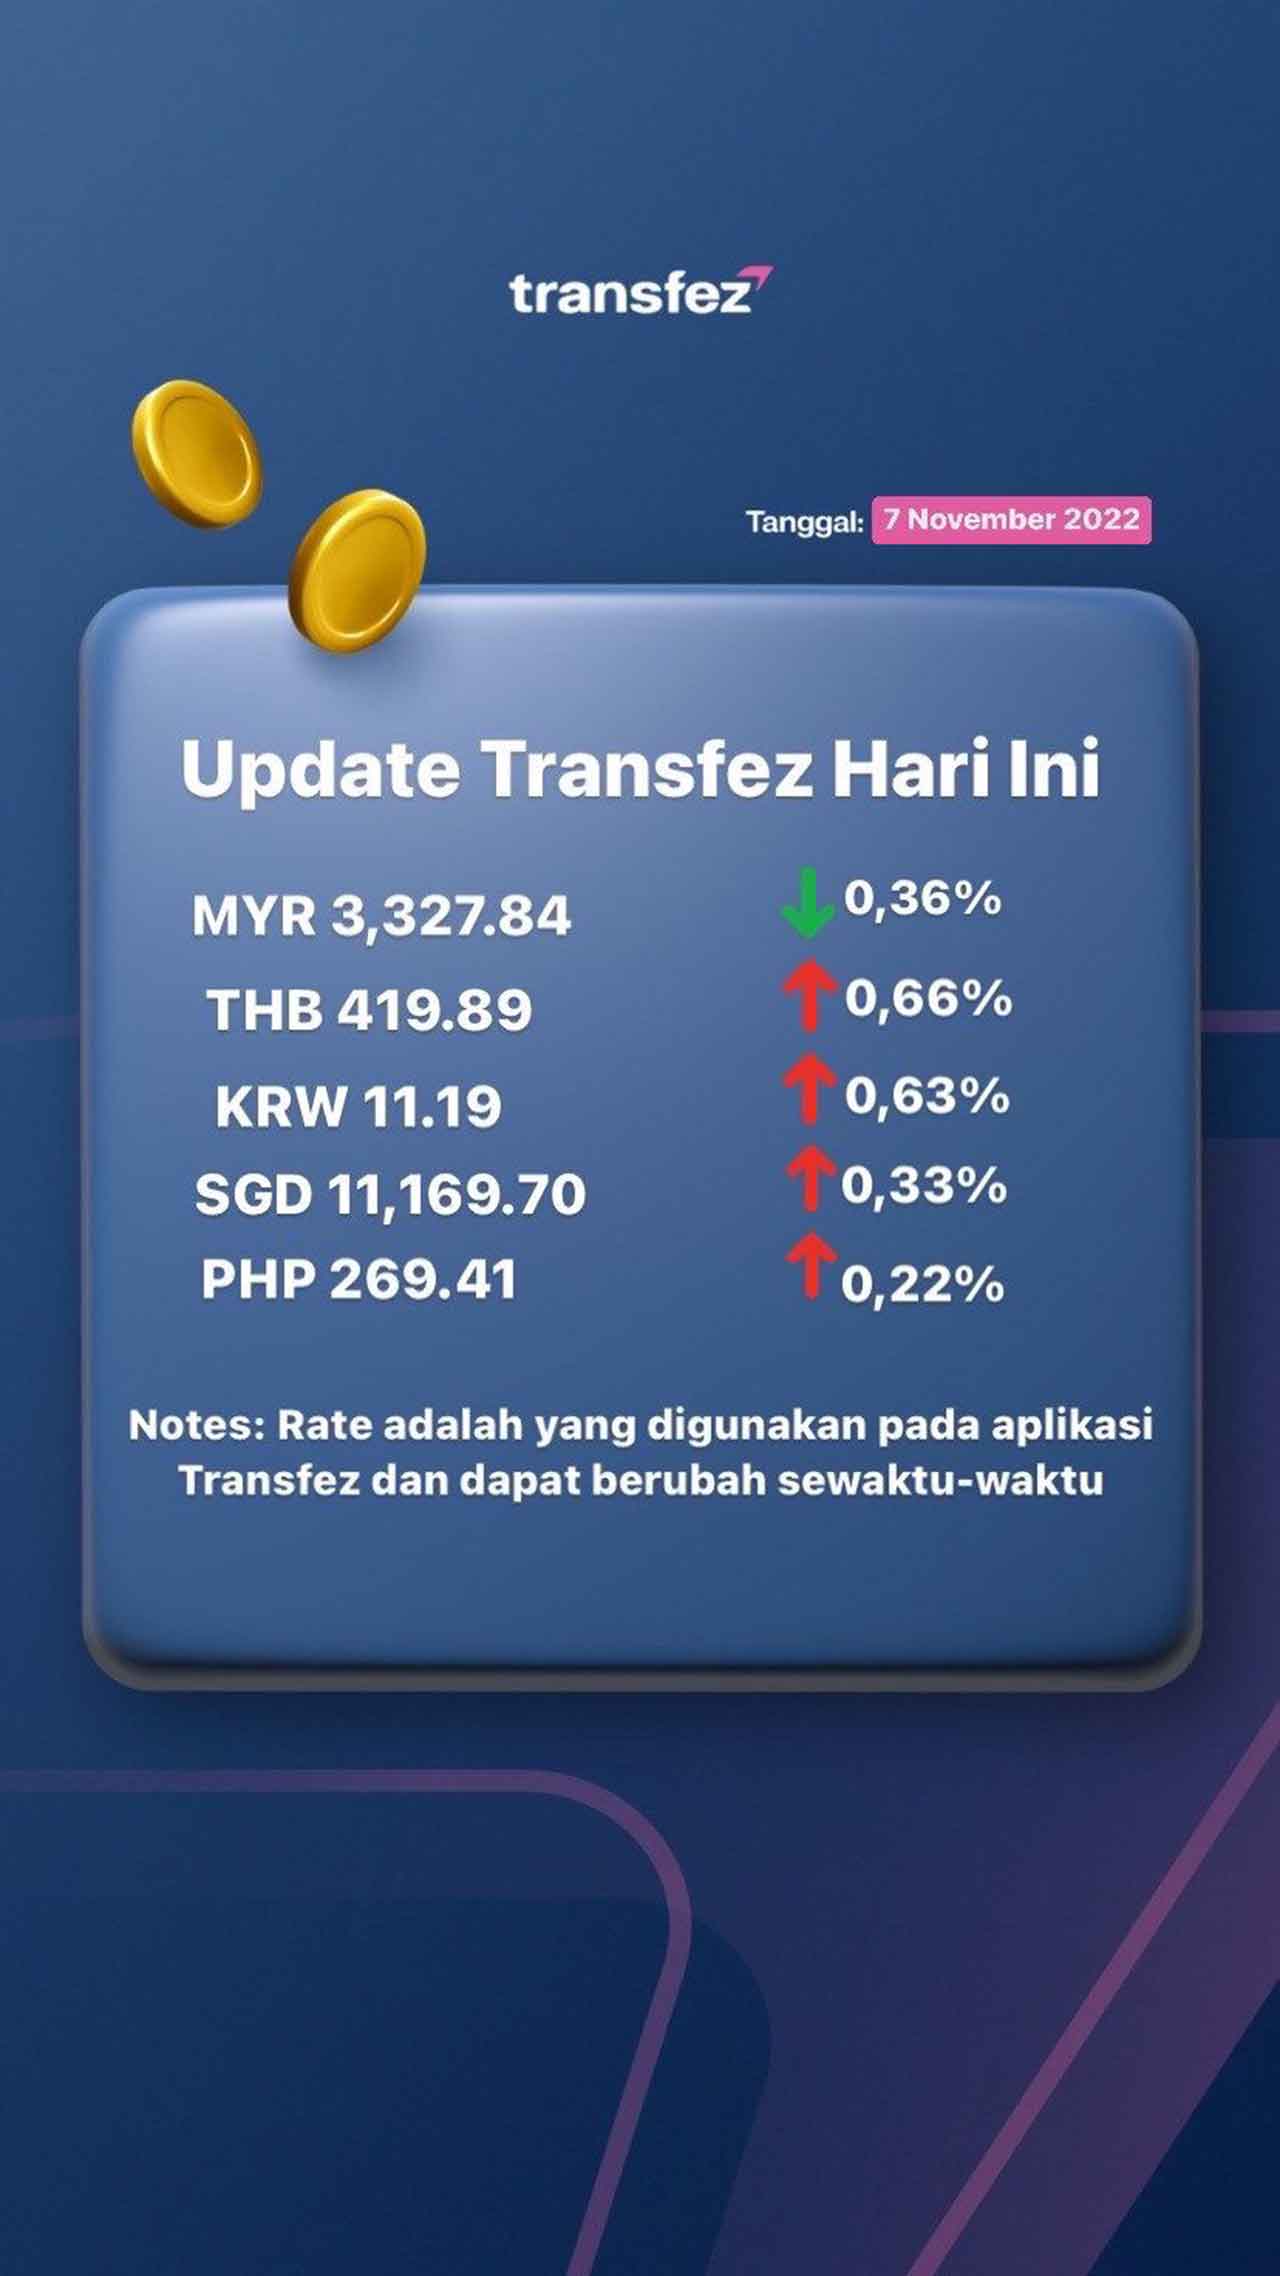 Update Rate Transfez Hari Ini 7 November 2022